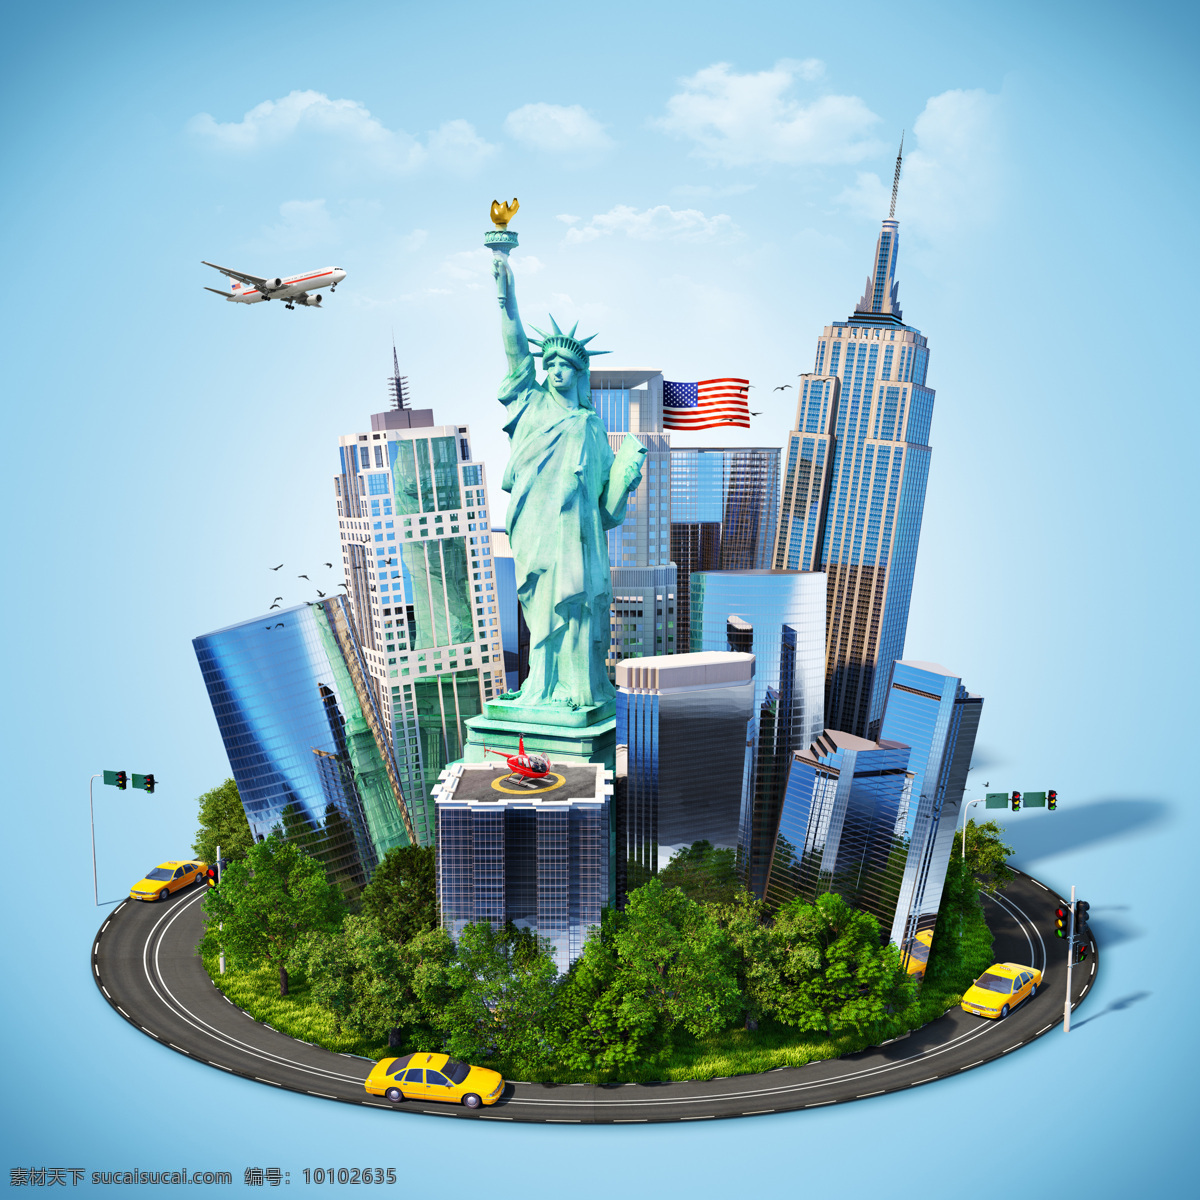 美国旅游海报 美国旅游景点 自由女神 城市建筑 高楼大厦 飞机 其他类别 生活百科 青色 天蓝色